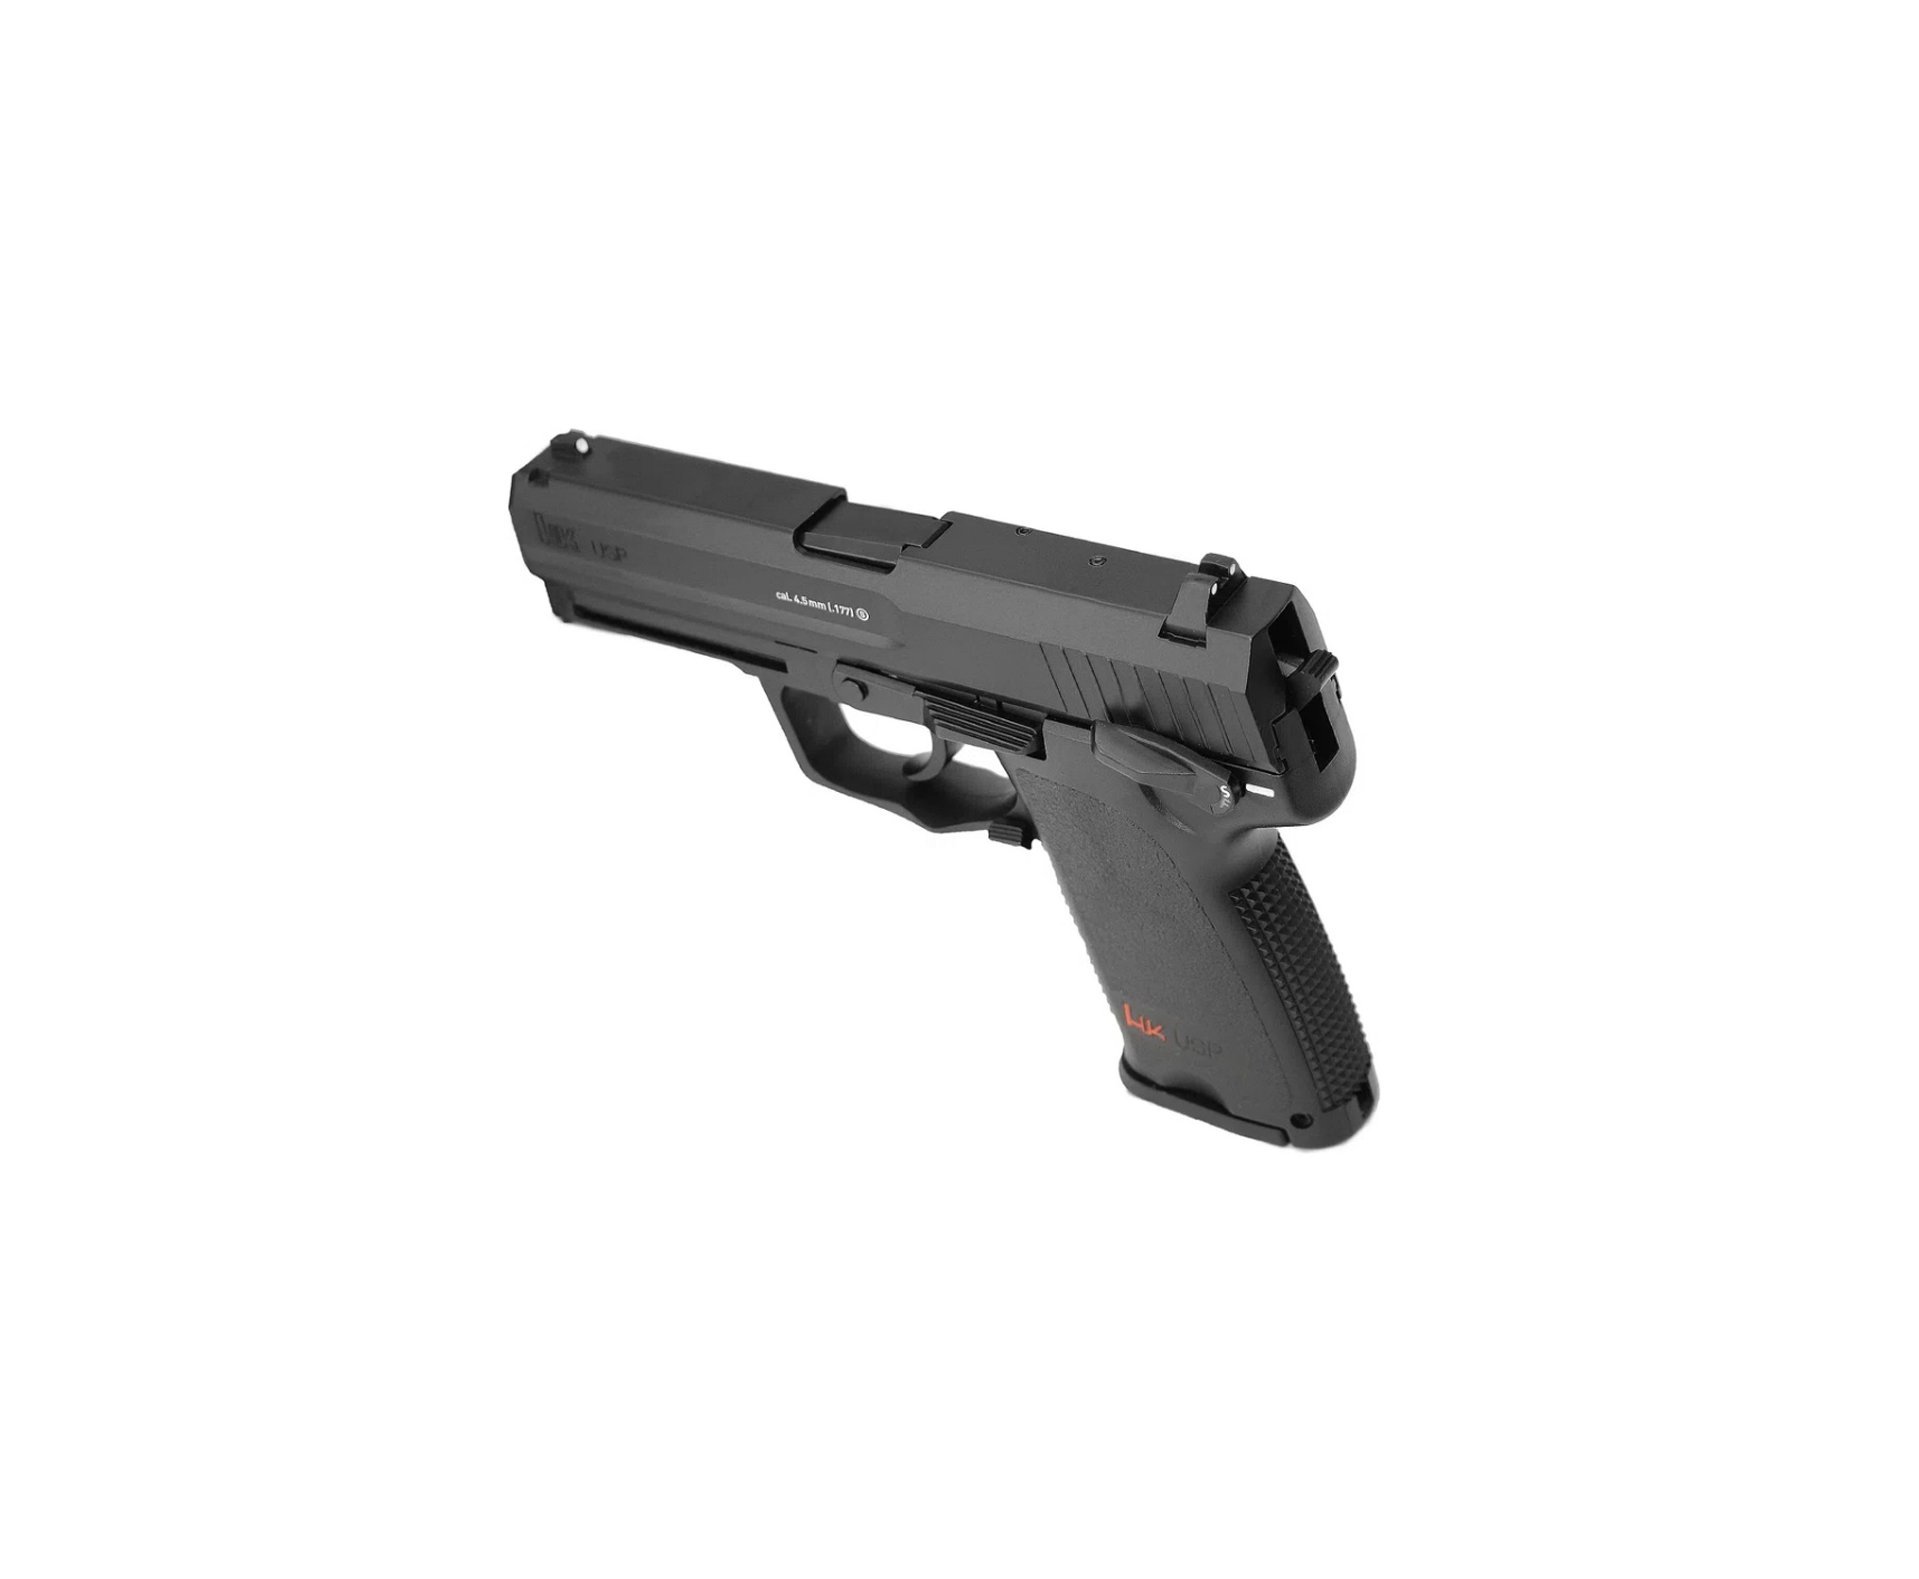 Pistola De Pressão Co2 Hk Usp Full Metal 4,5mm + Co2 + Munição + Case + Óleo de silicone